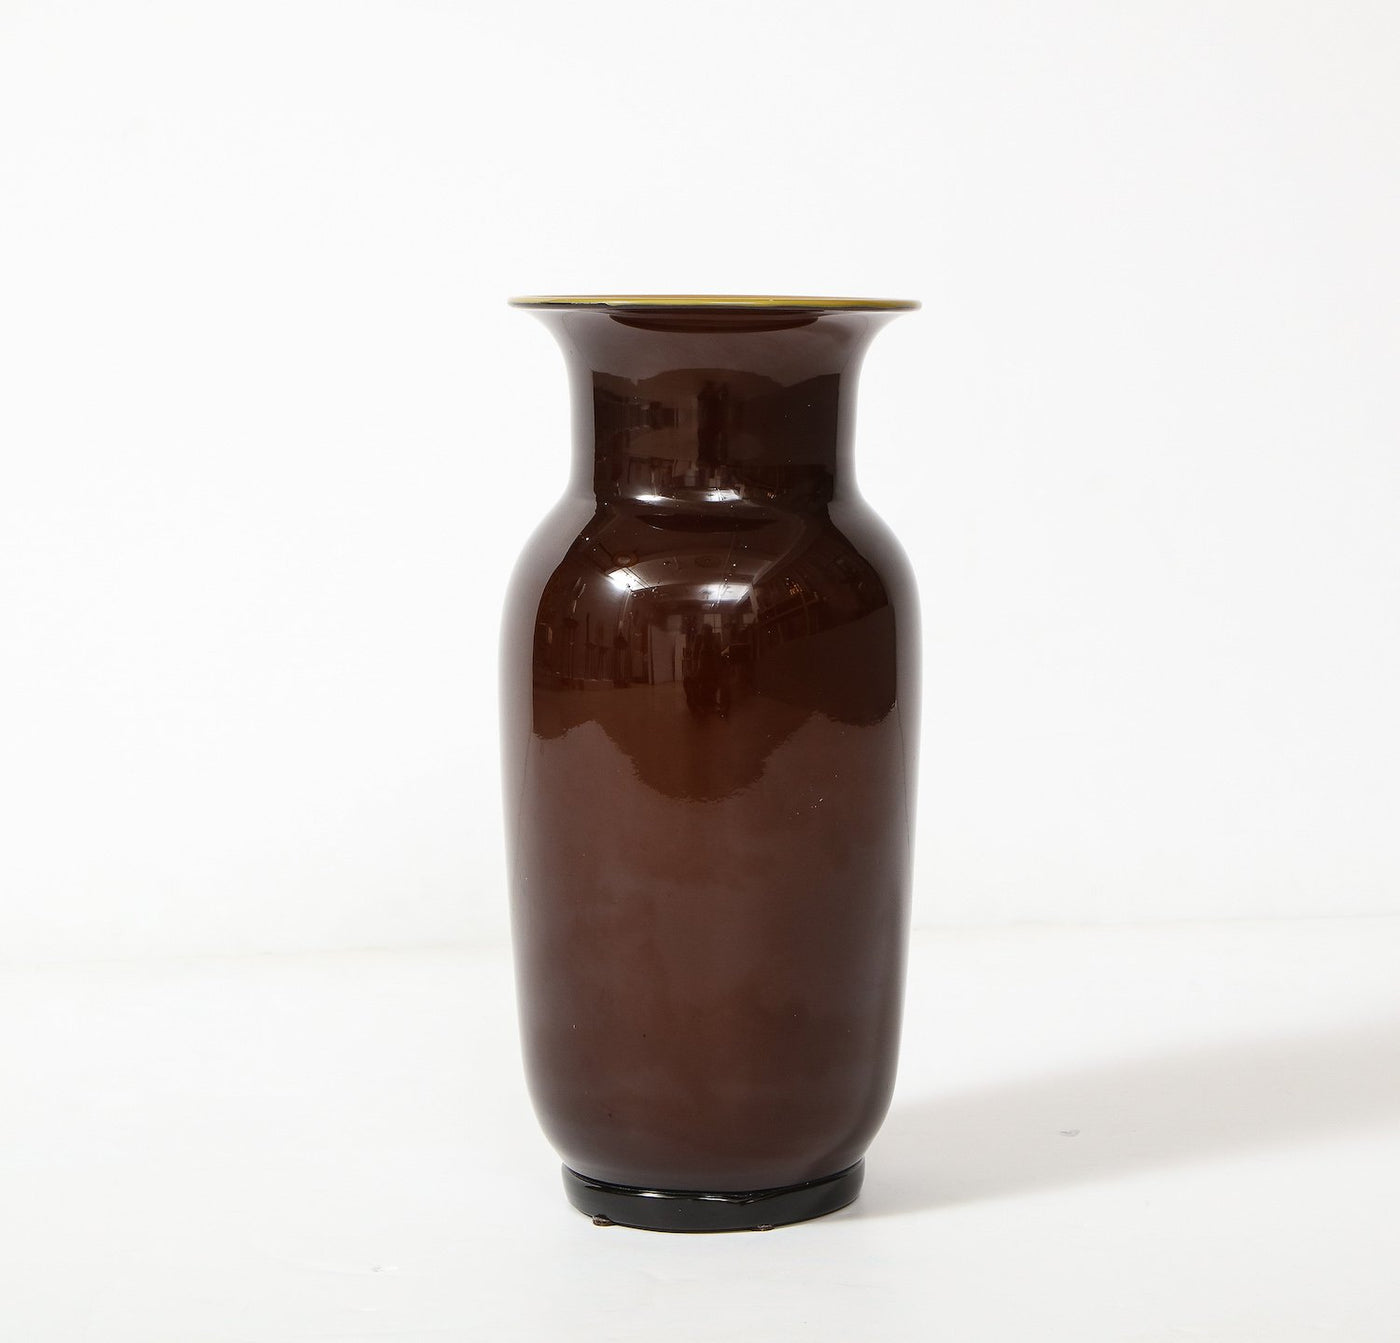 Vase #3315 By Tomaso Buzzi for Venini